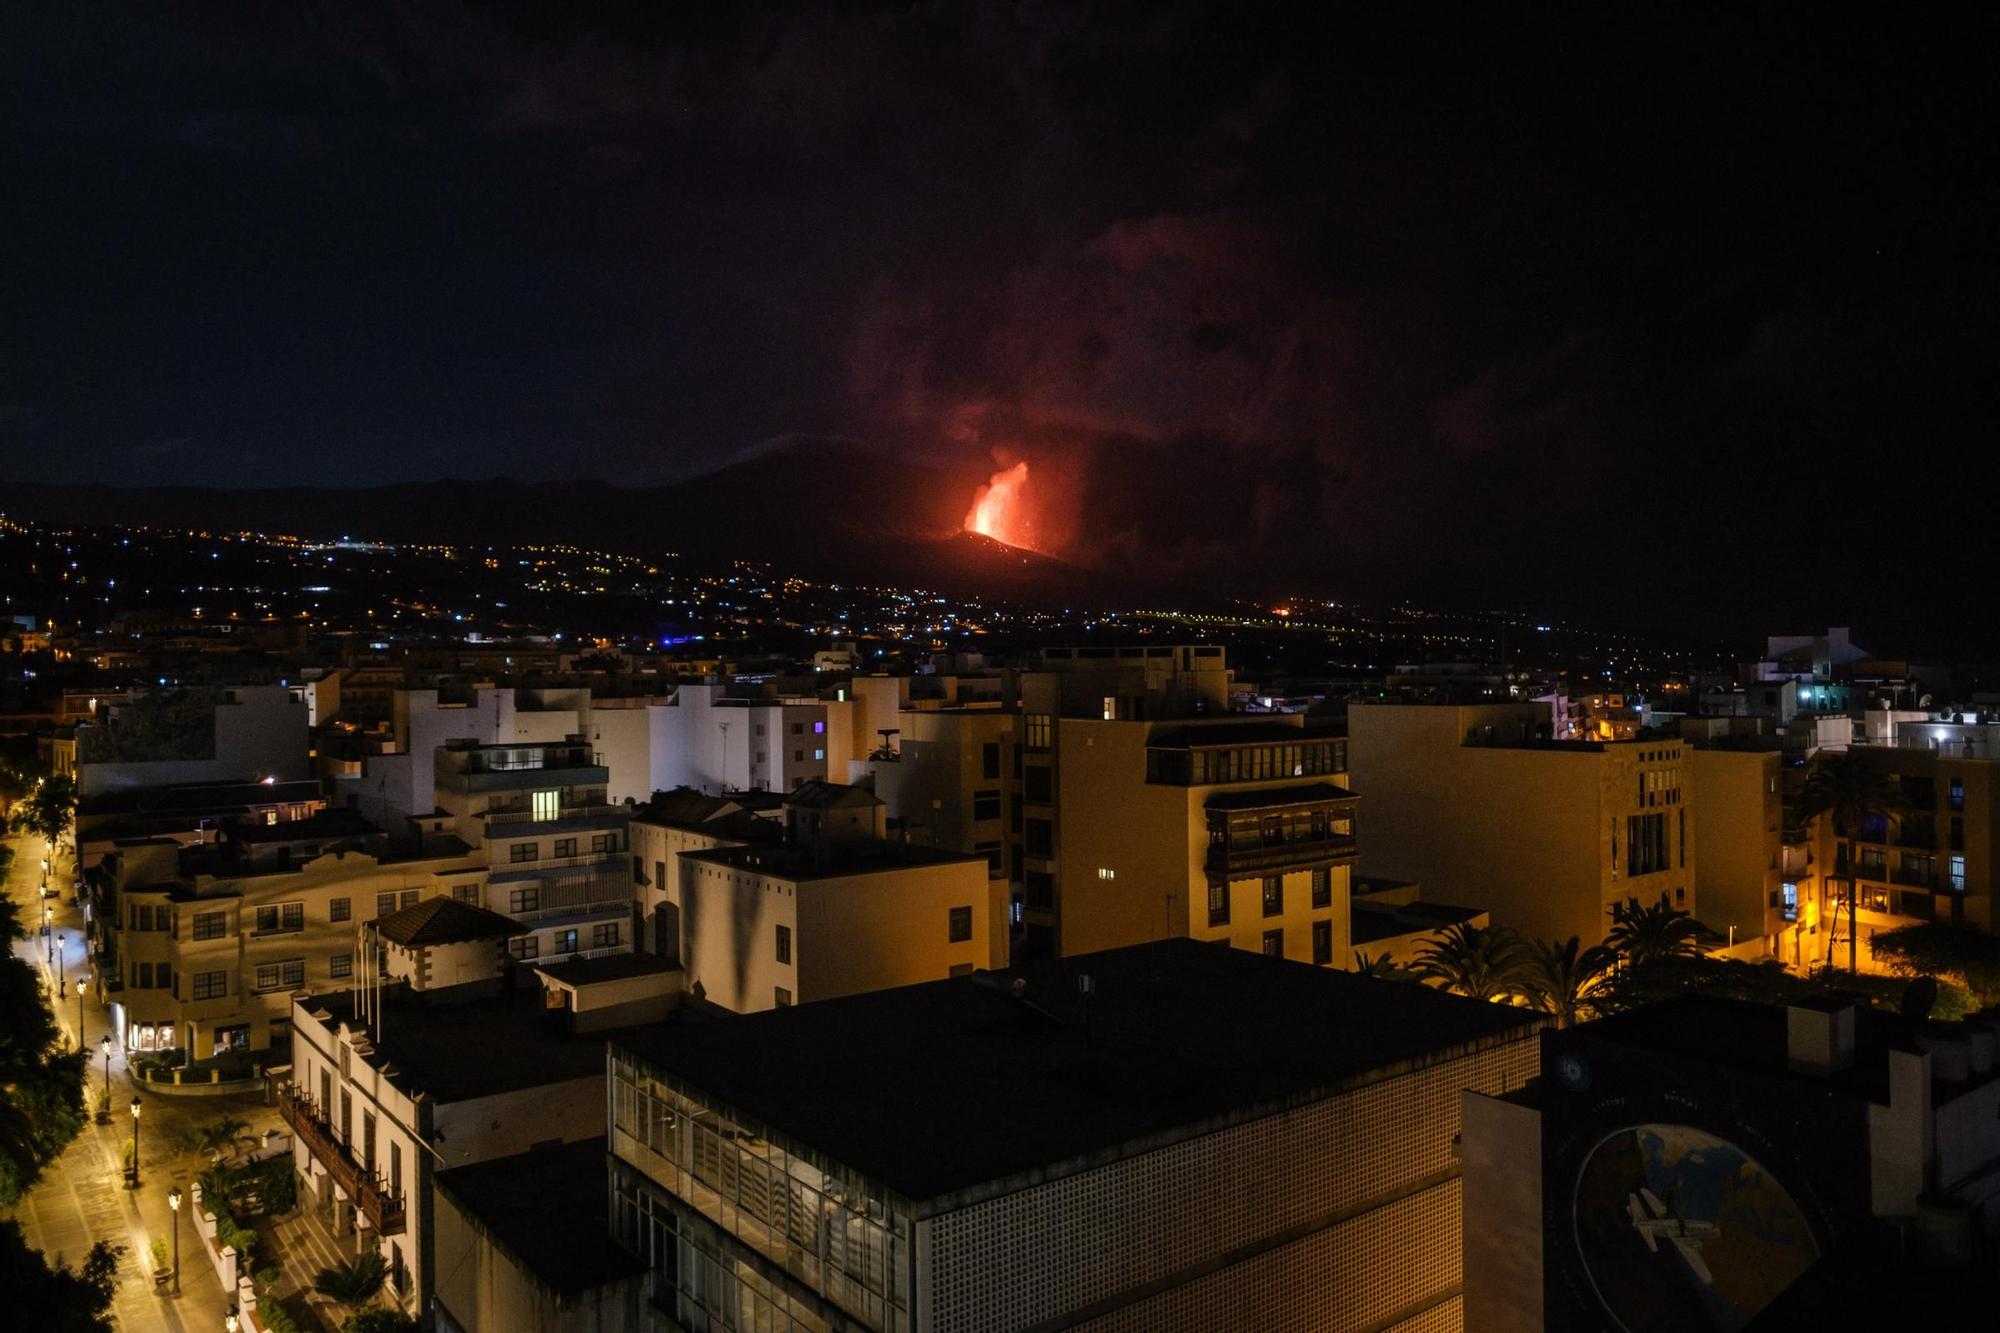 La erupción del volcán de La Palma, en imágenes